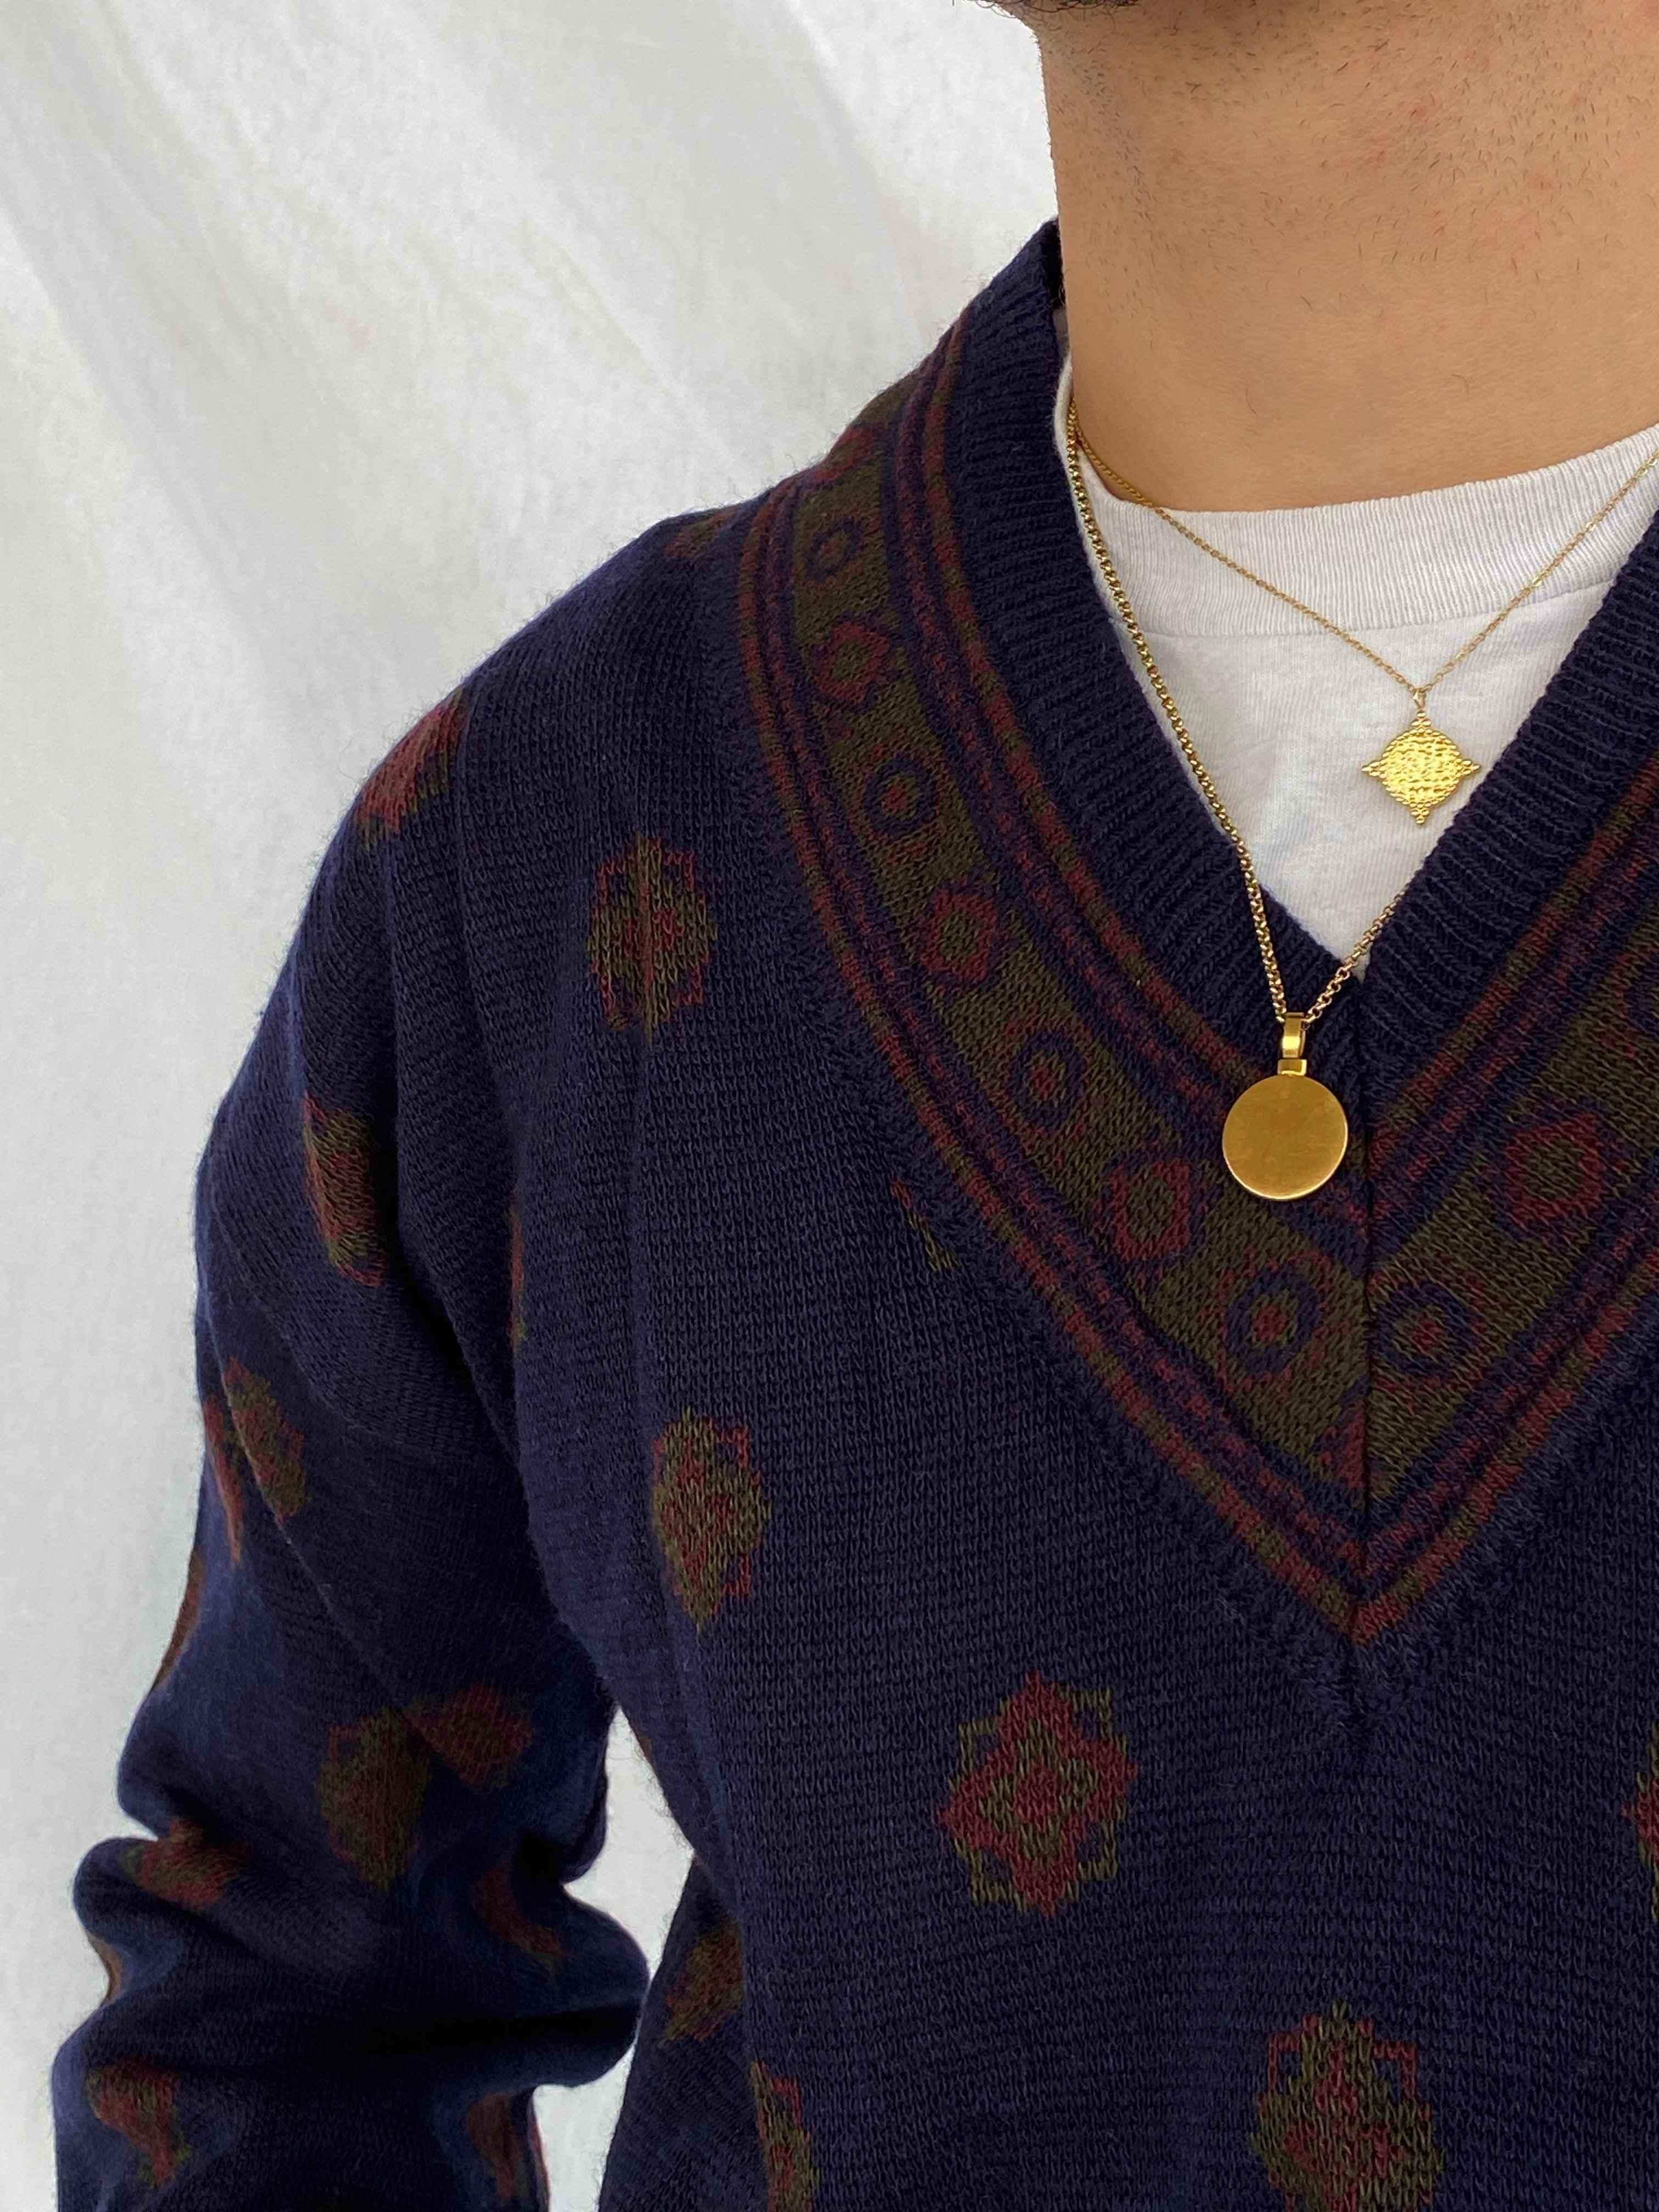 John Ashford Knitted Sweater - Balagan Vintage Sweater 00s, 90s, knit, knitted, knitted sweater, men, printed sweater, vintage, vintage sweater, winter